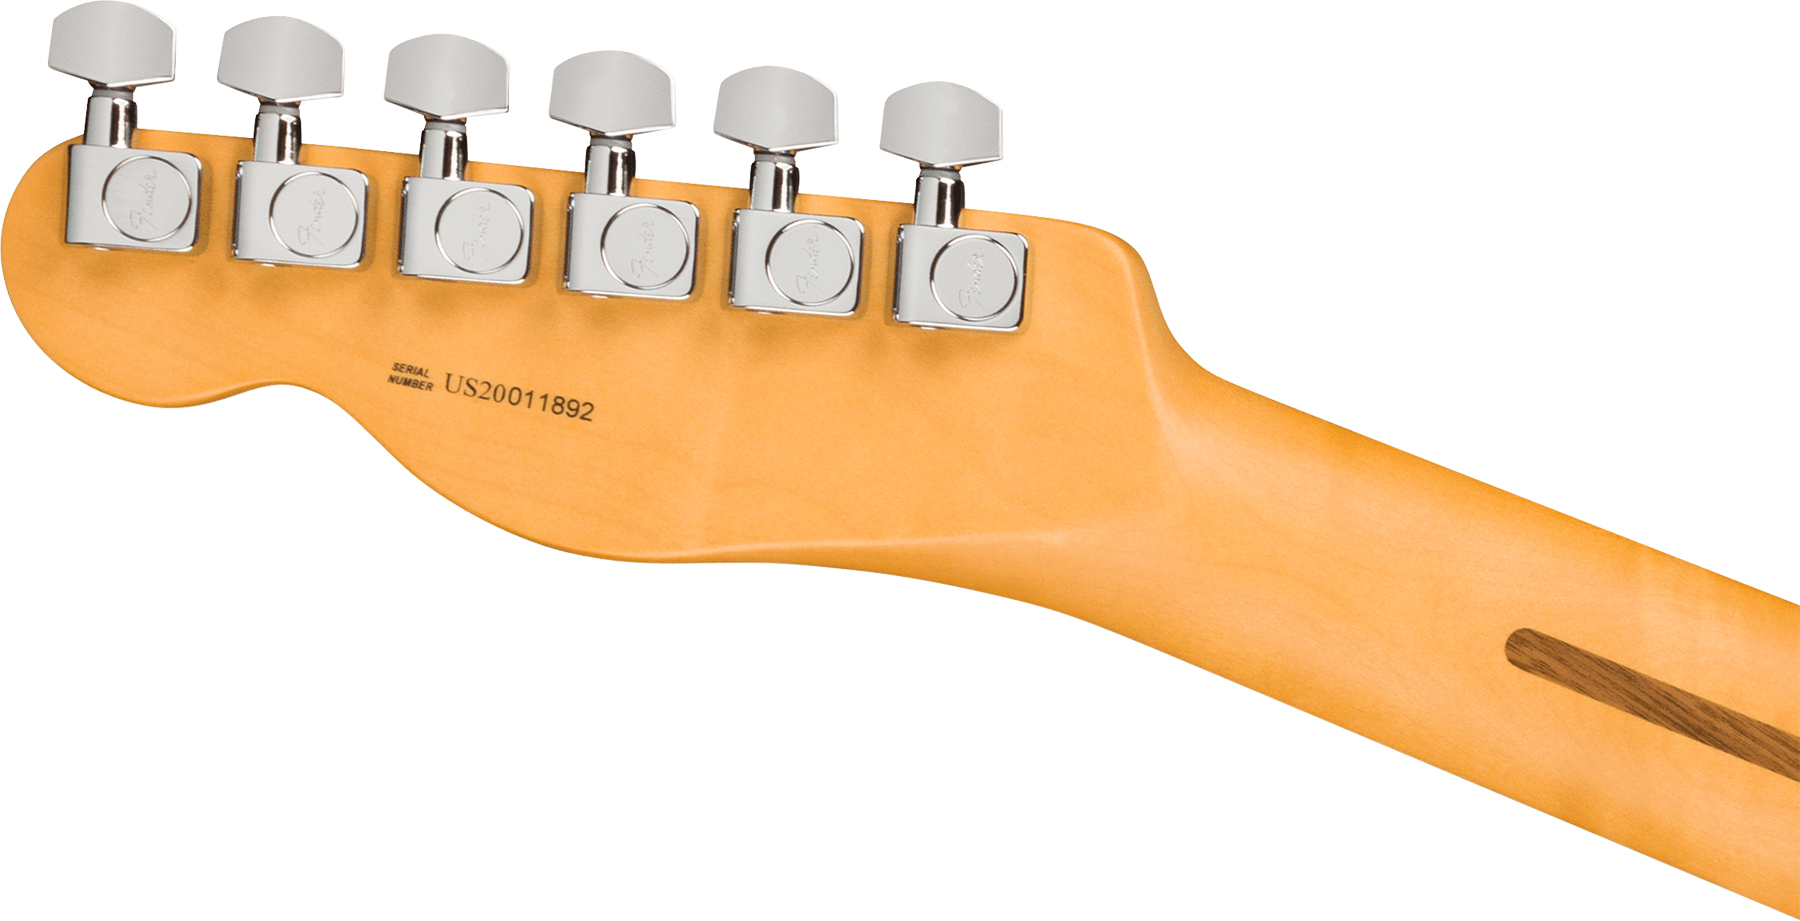 Fender Tele American Professional Ii Usa Rw - Dark Night - Guitarra eléctrica con forma de tel - Variation 3